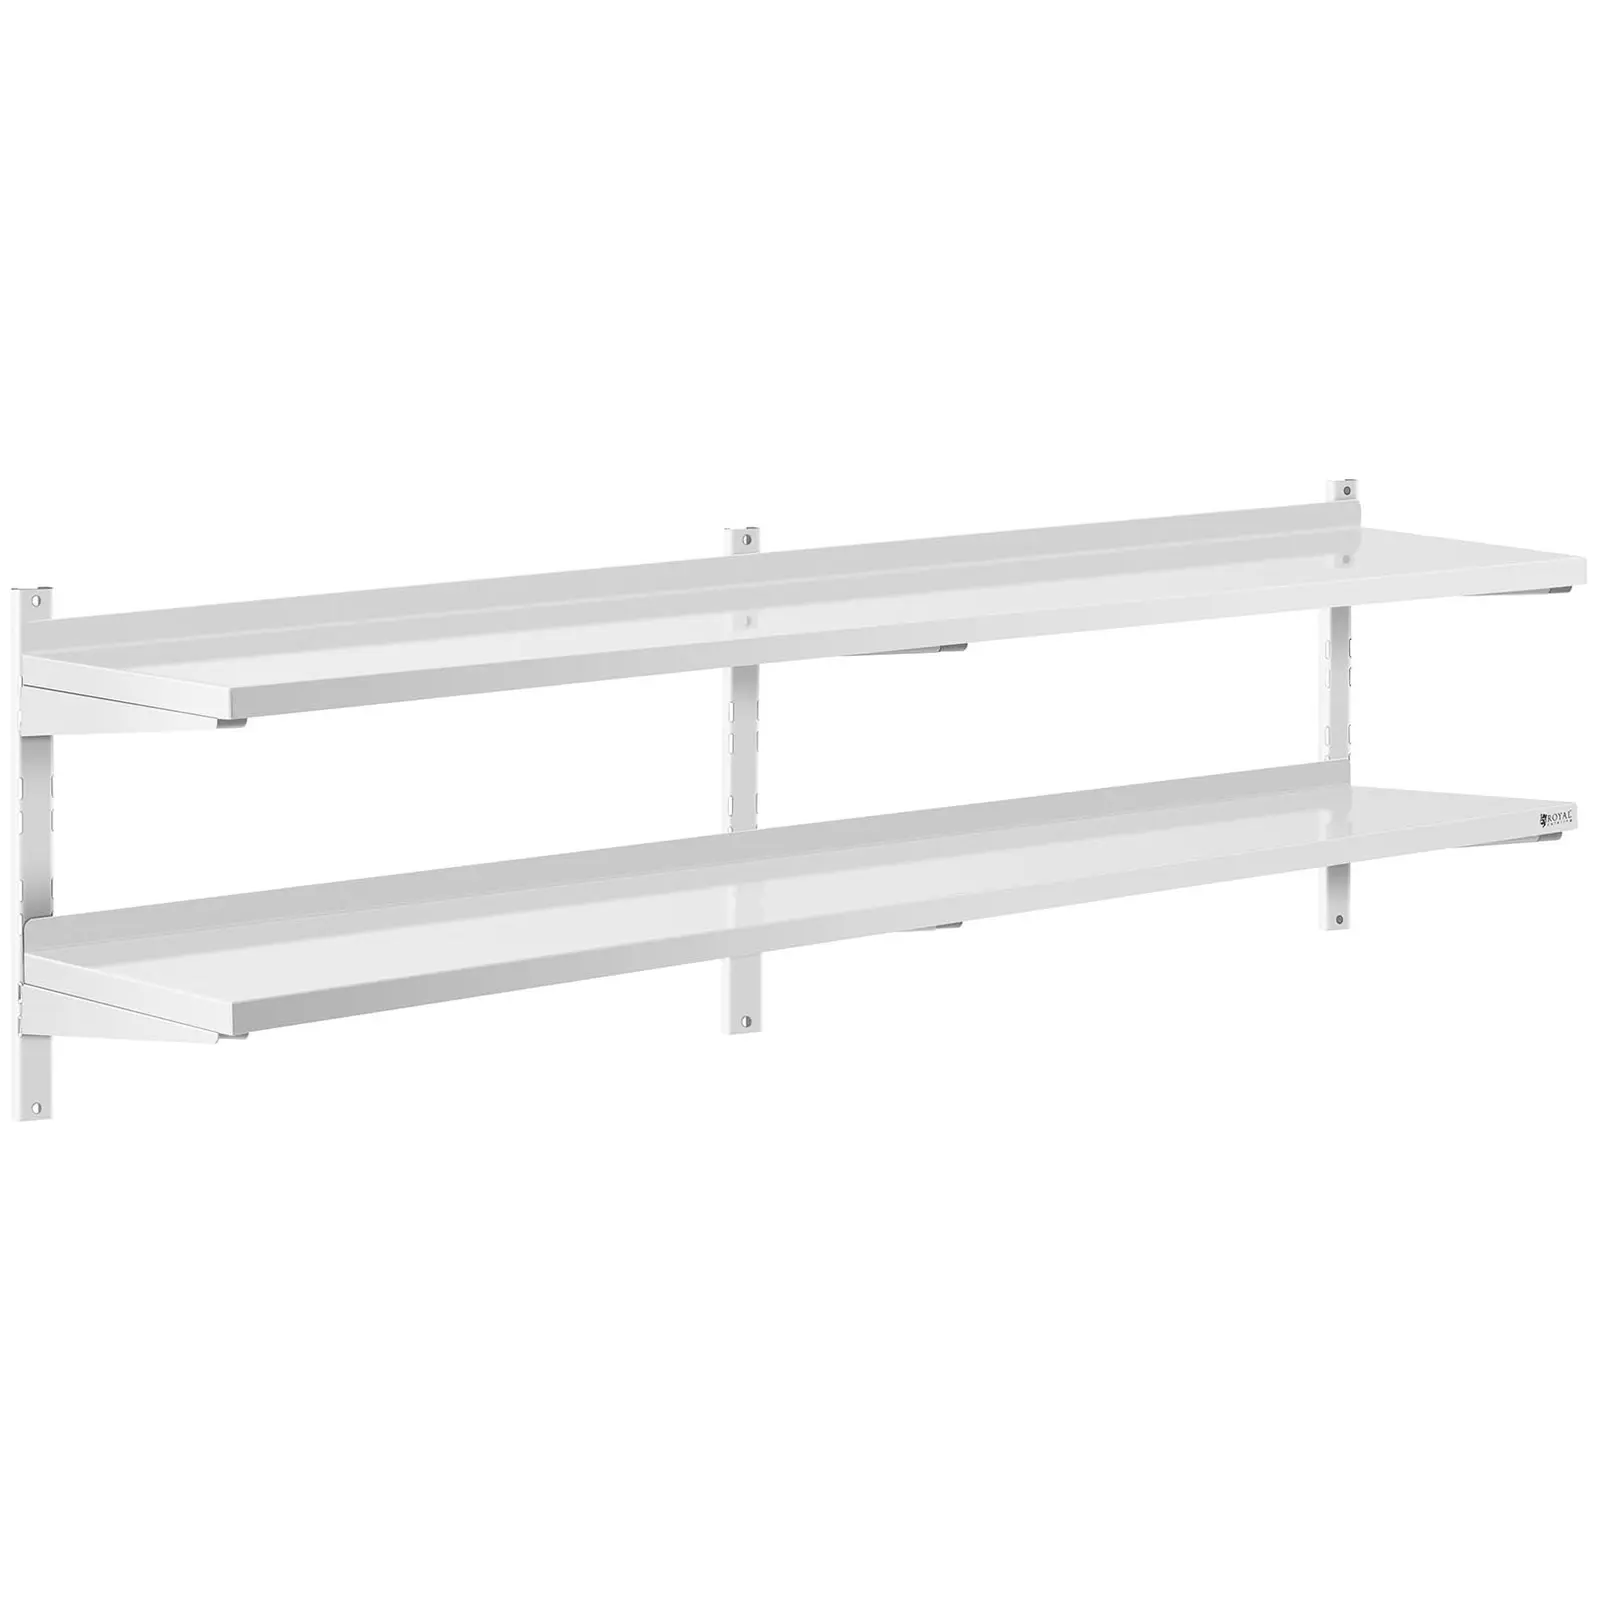 Stainless Steel Wall Shelf - 2 shelves - 40 x 200 cm